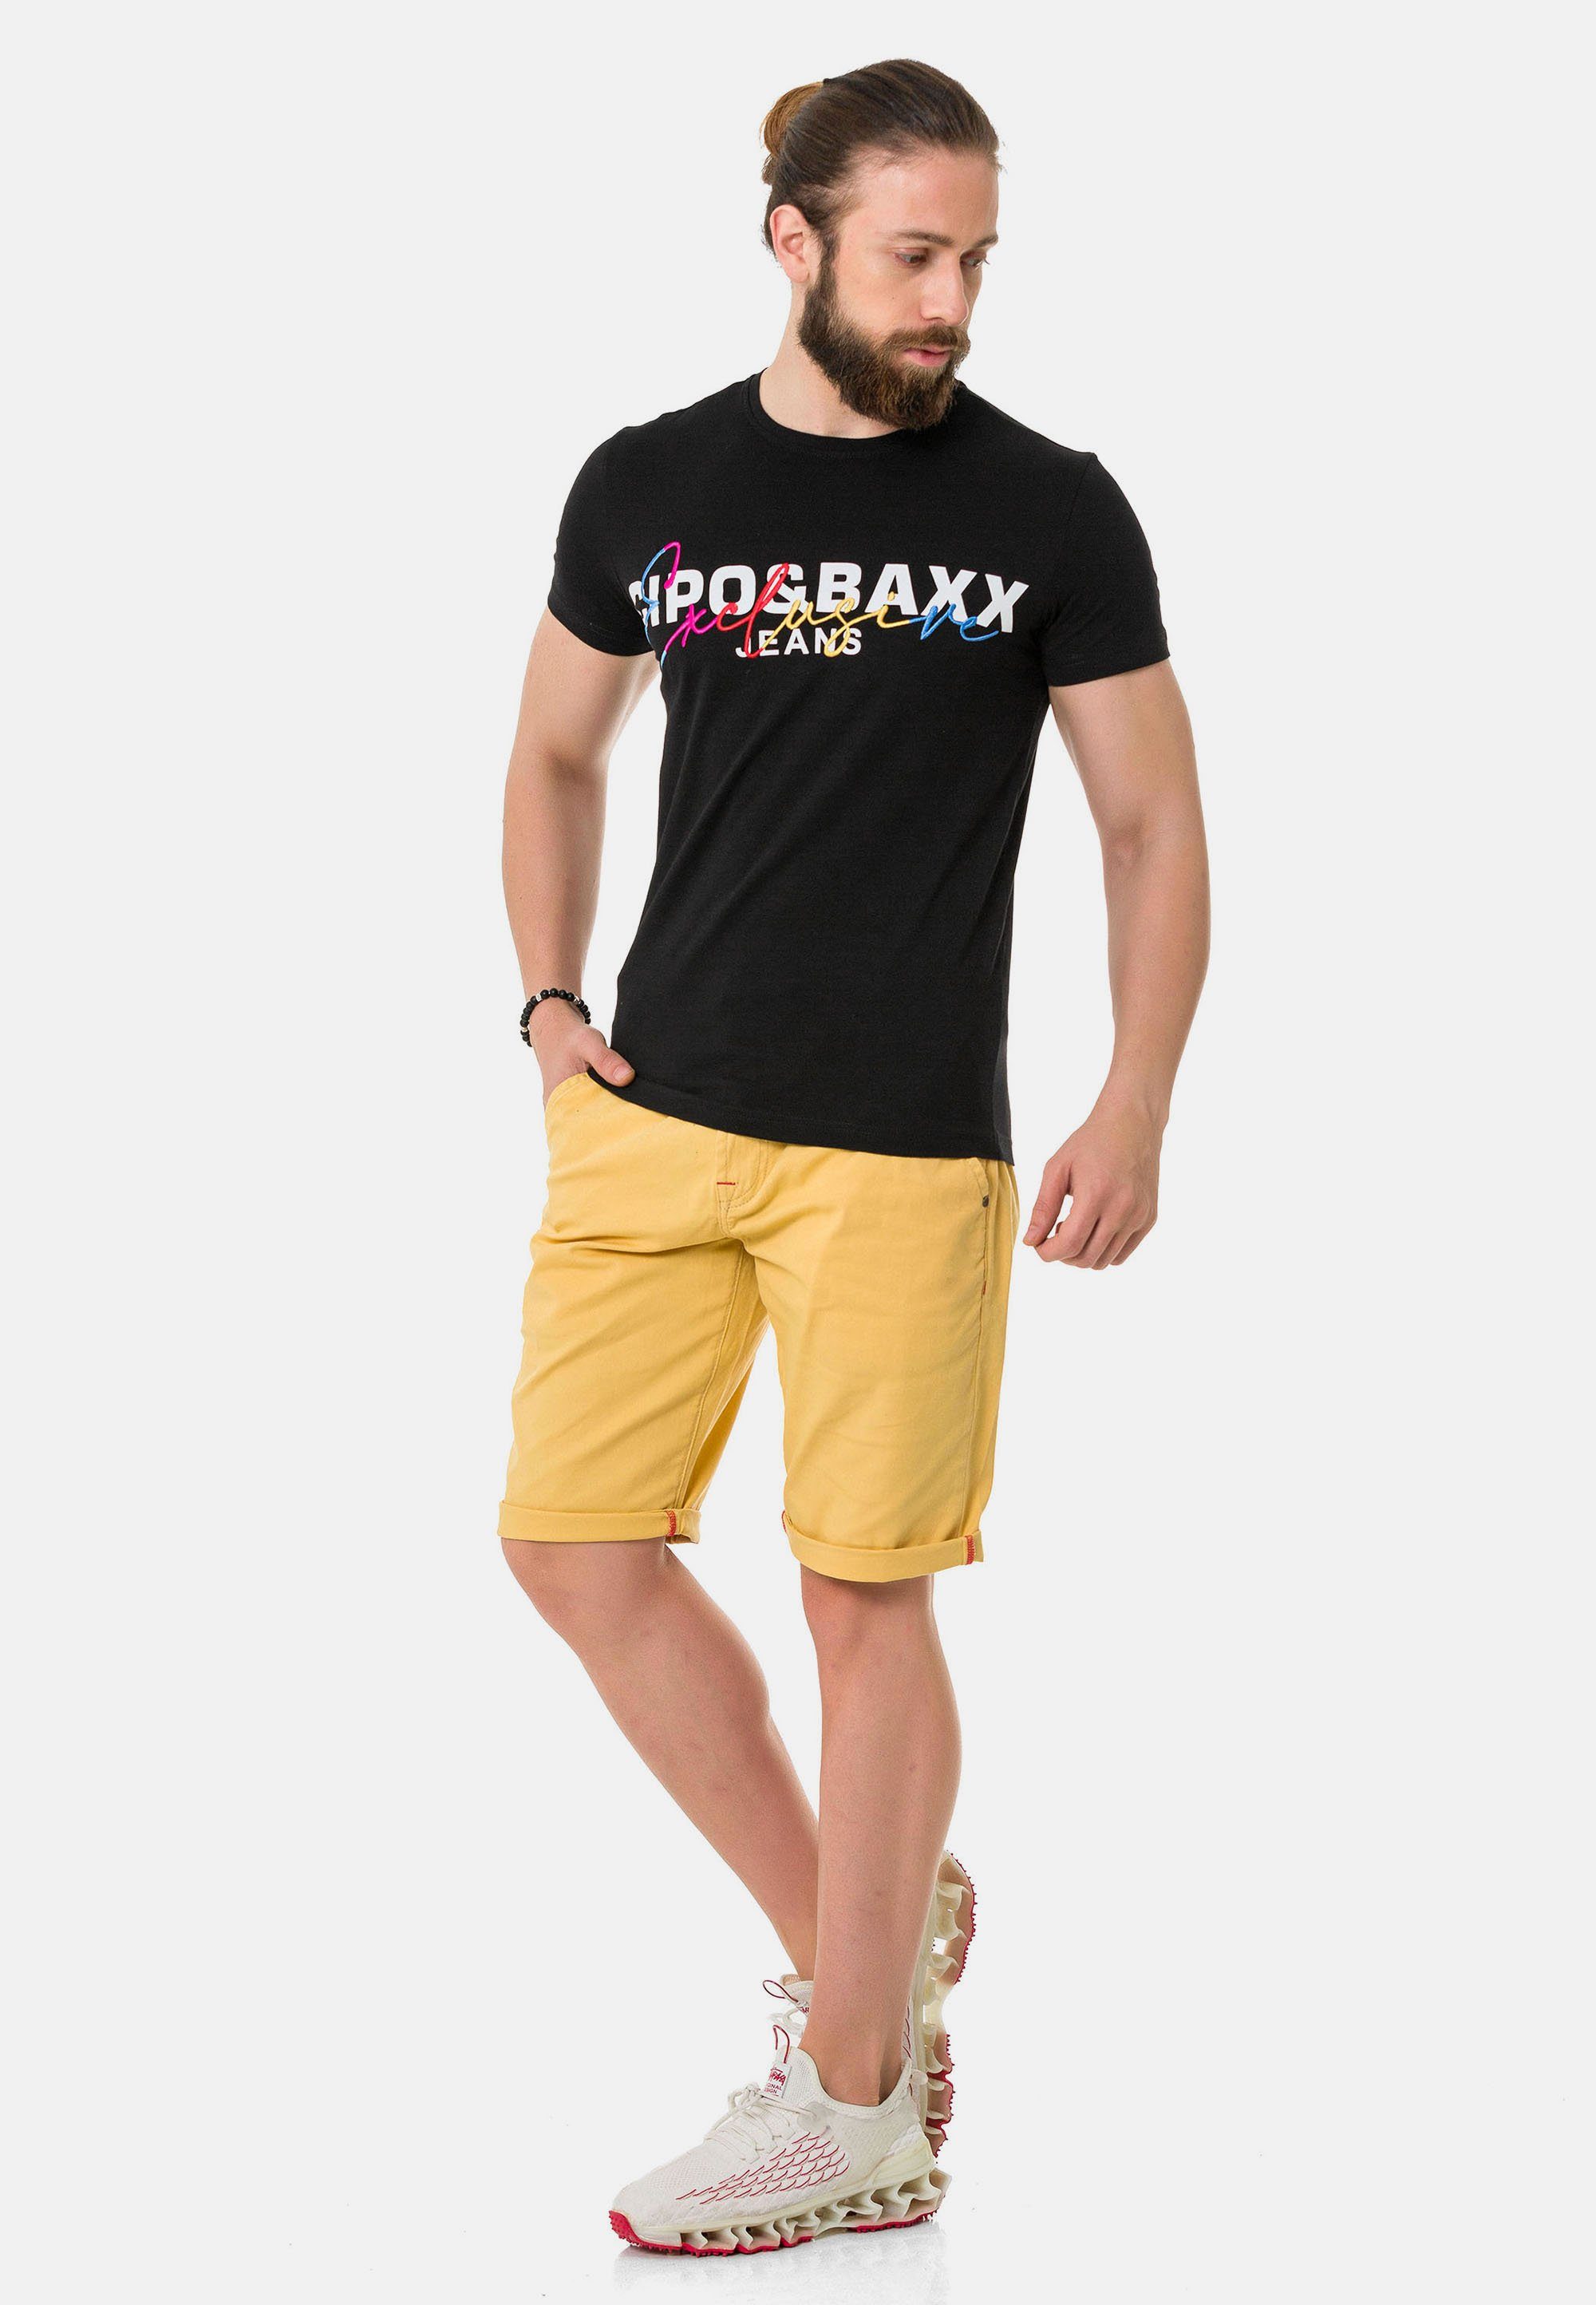 T-Shirt & Cipo Markenprint schwarz mit Baxx